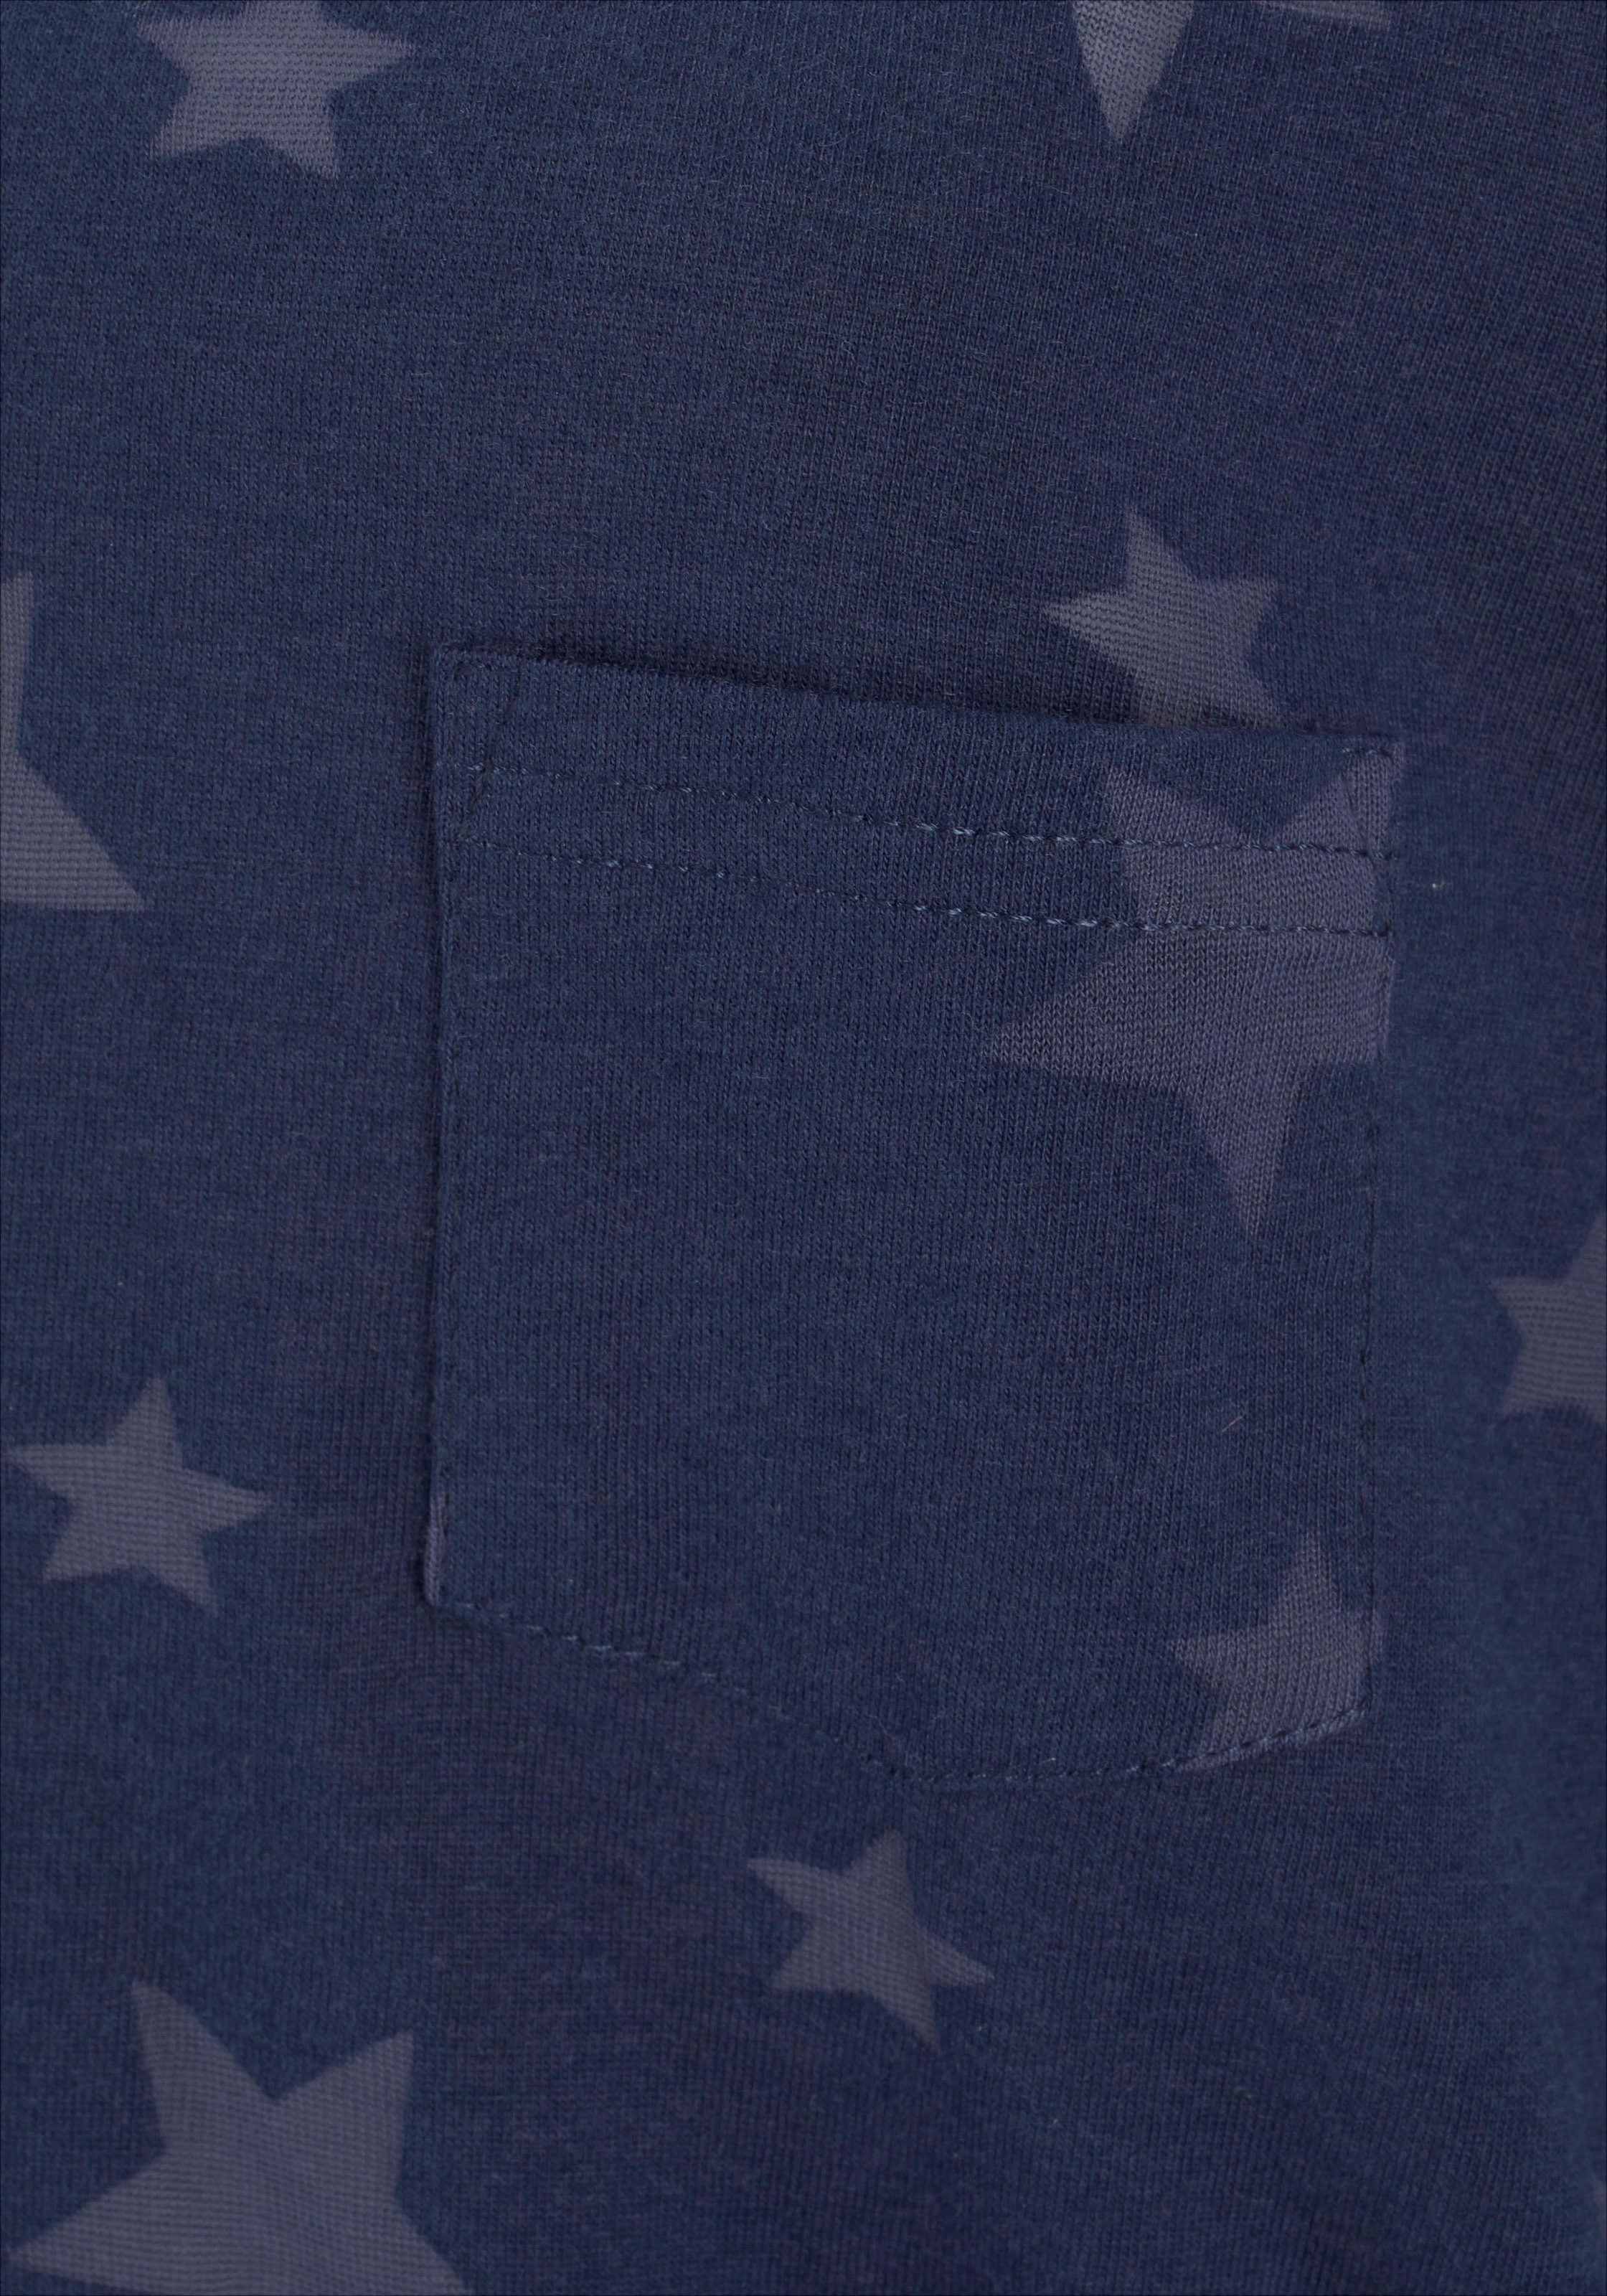 Beachtime T-Shirt, (2er-Pack), Ausbrenner-Qualität mit leicht transparenten  Sternen bei ♕